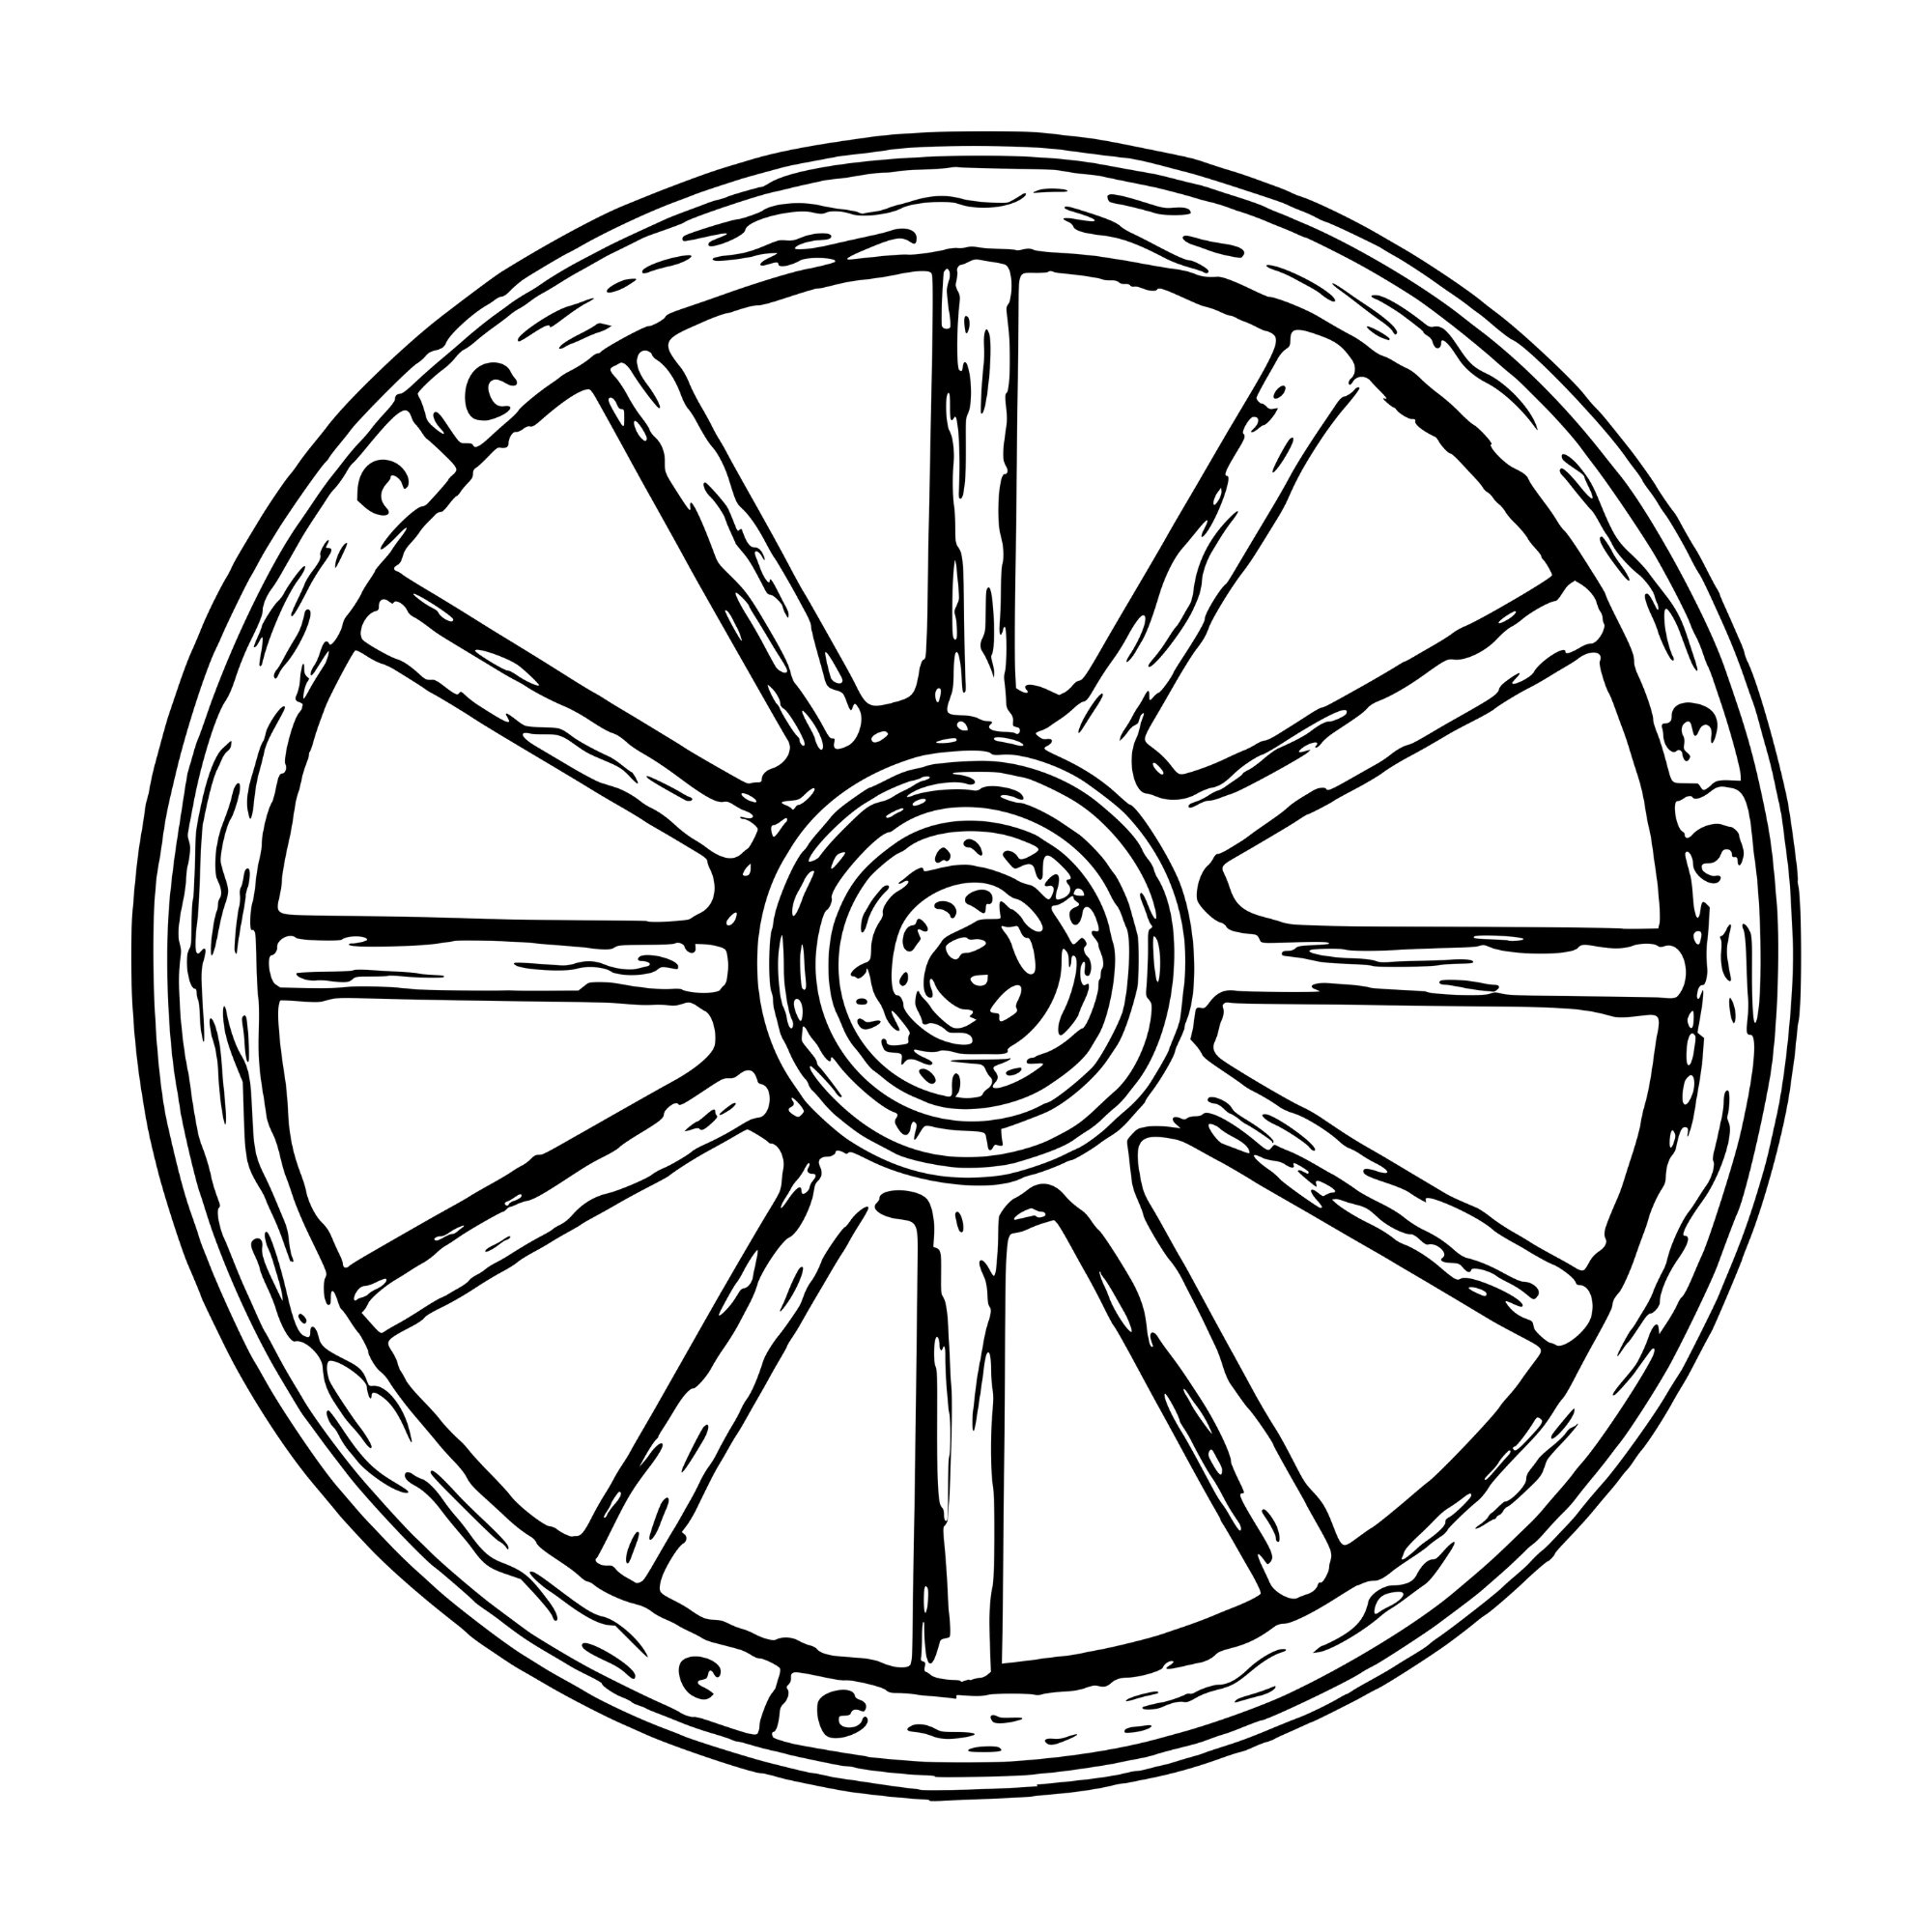 Wagon Wheel Sheet Music - KibrisPDR